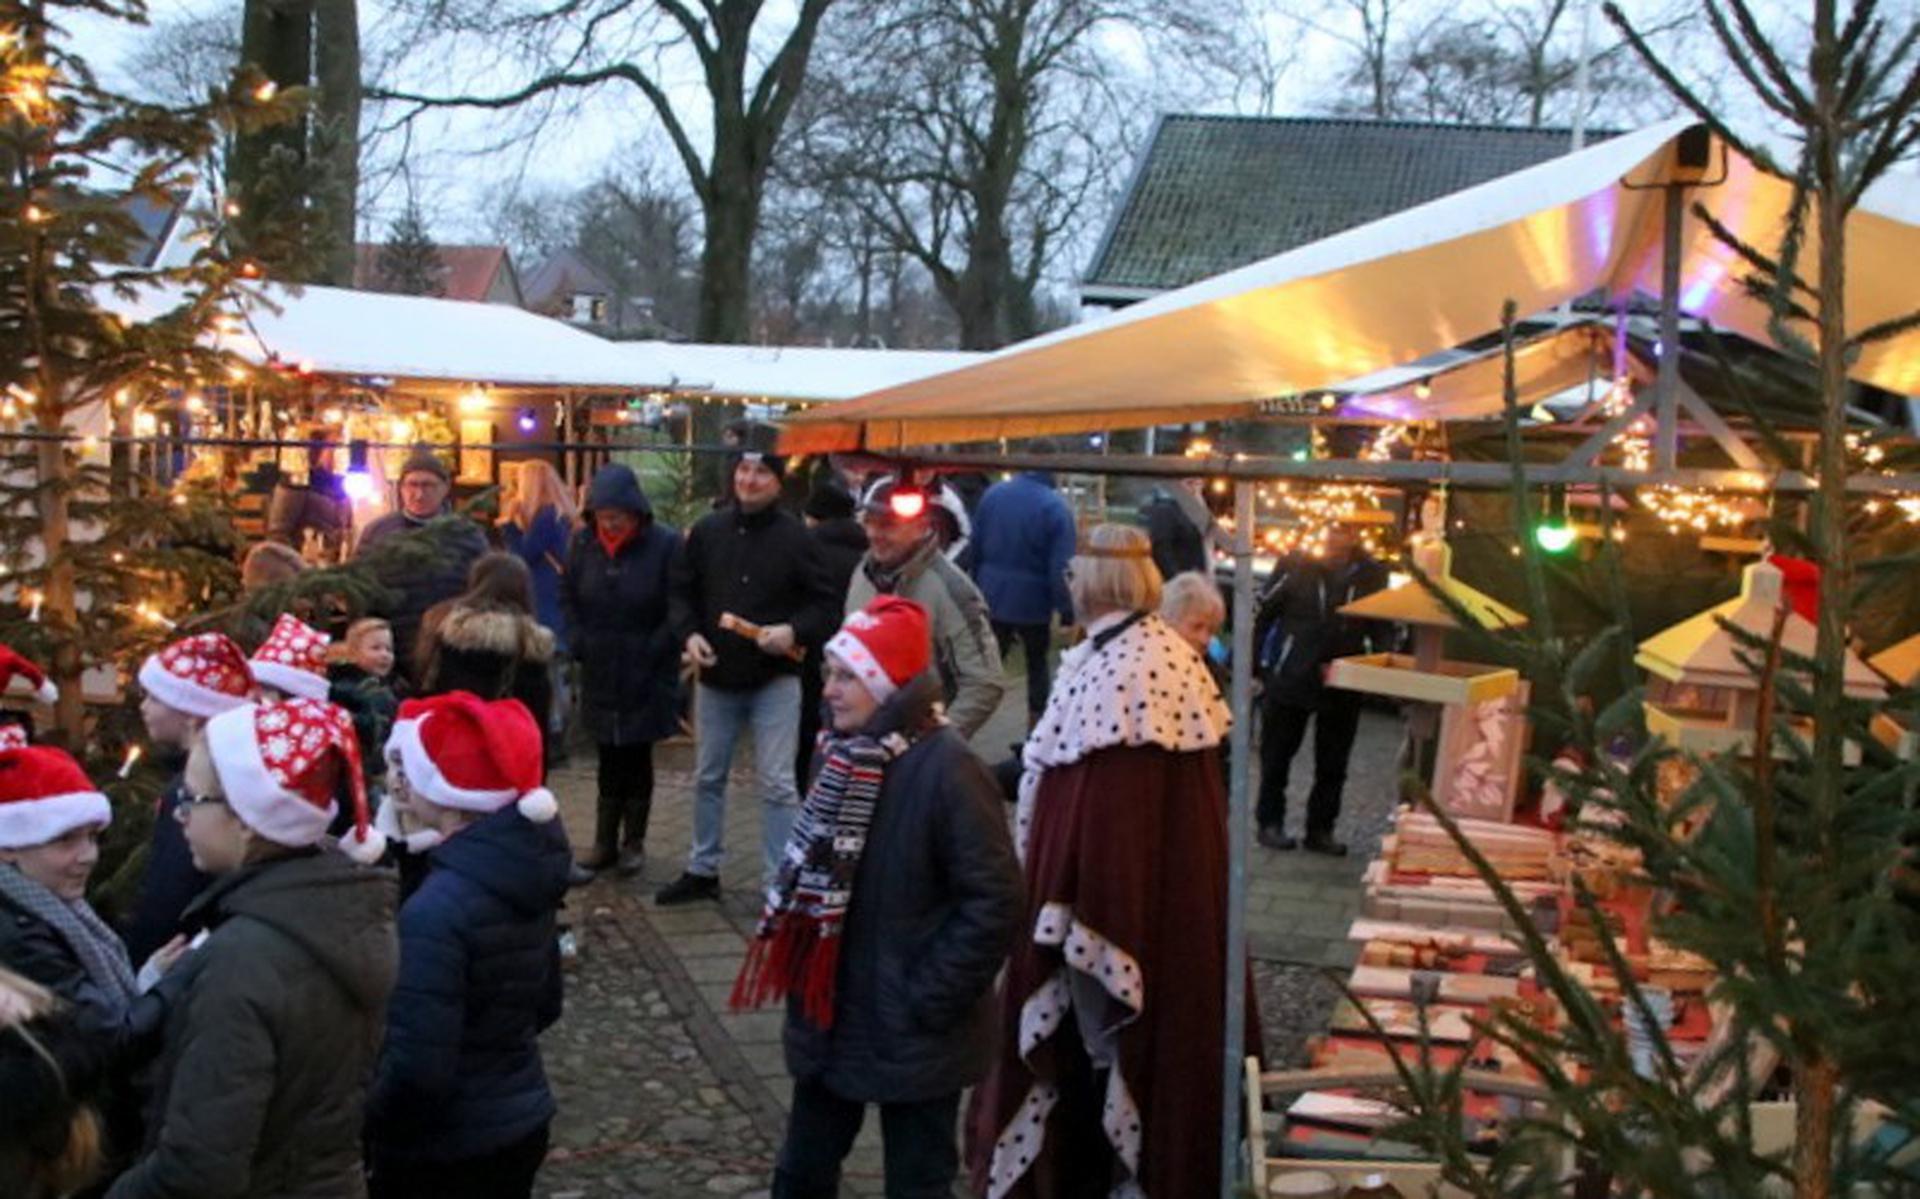 De organisatie van de kerstmarkt in Willemsoord vindt het niet verantwoord en heeft het evenement van 18 december afgelast.